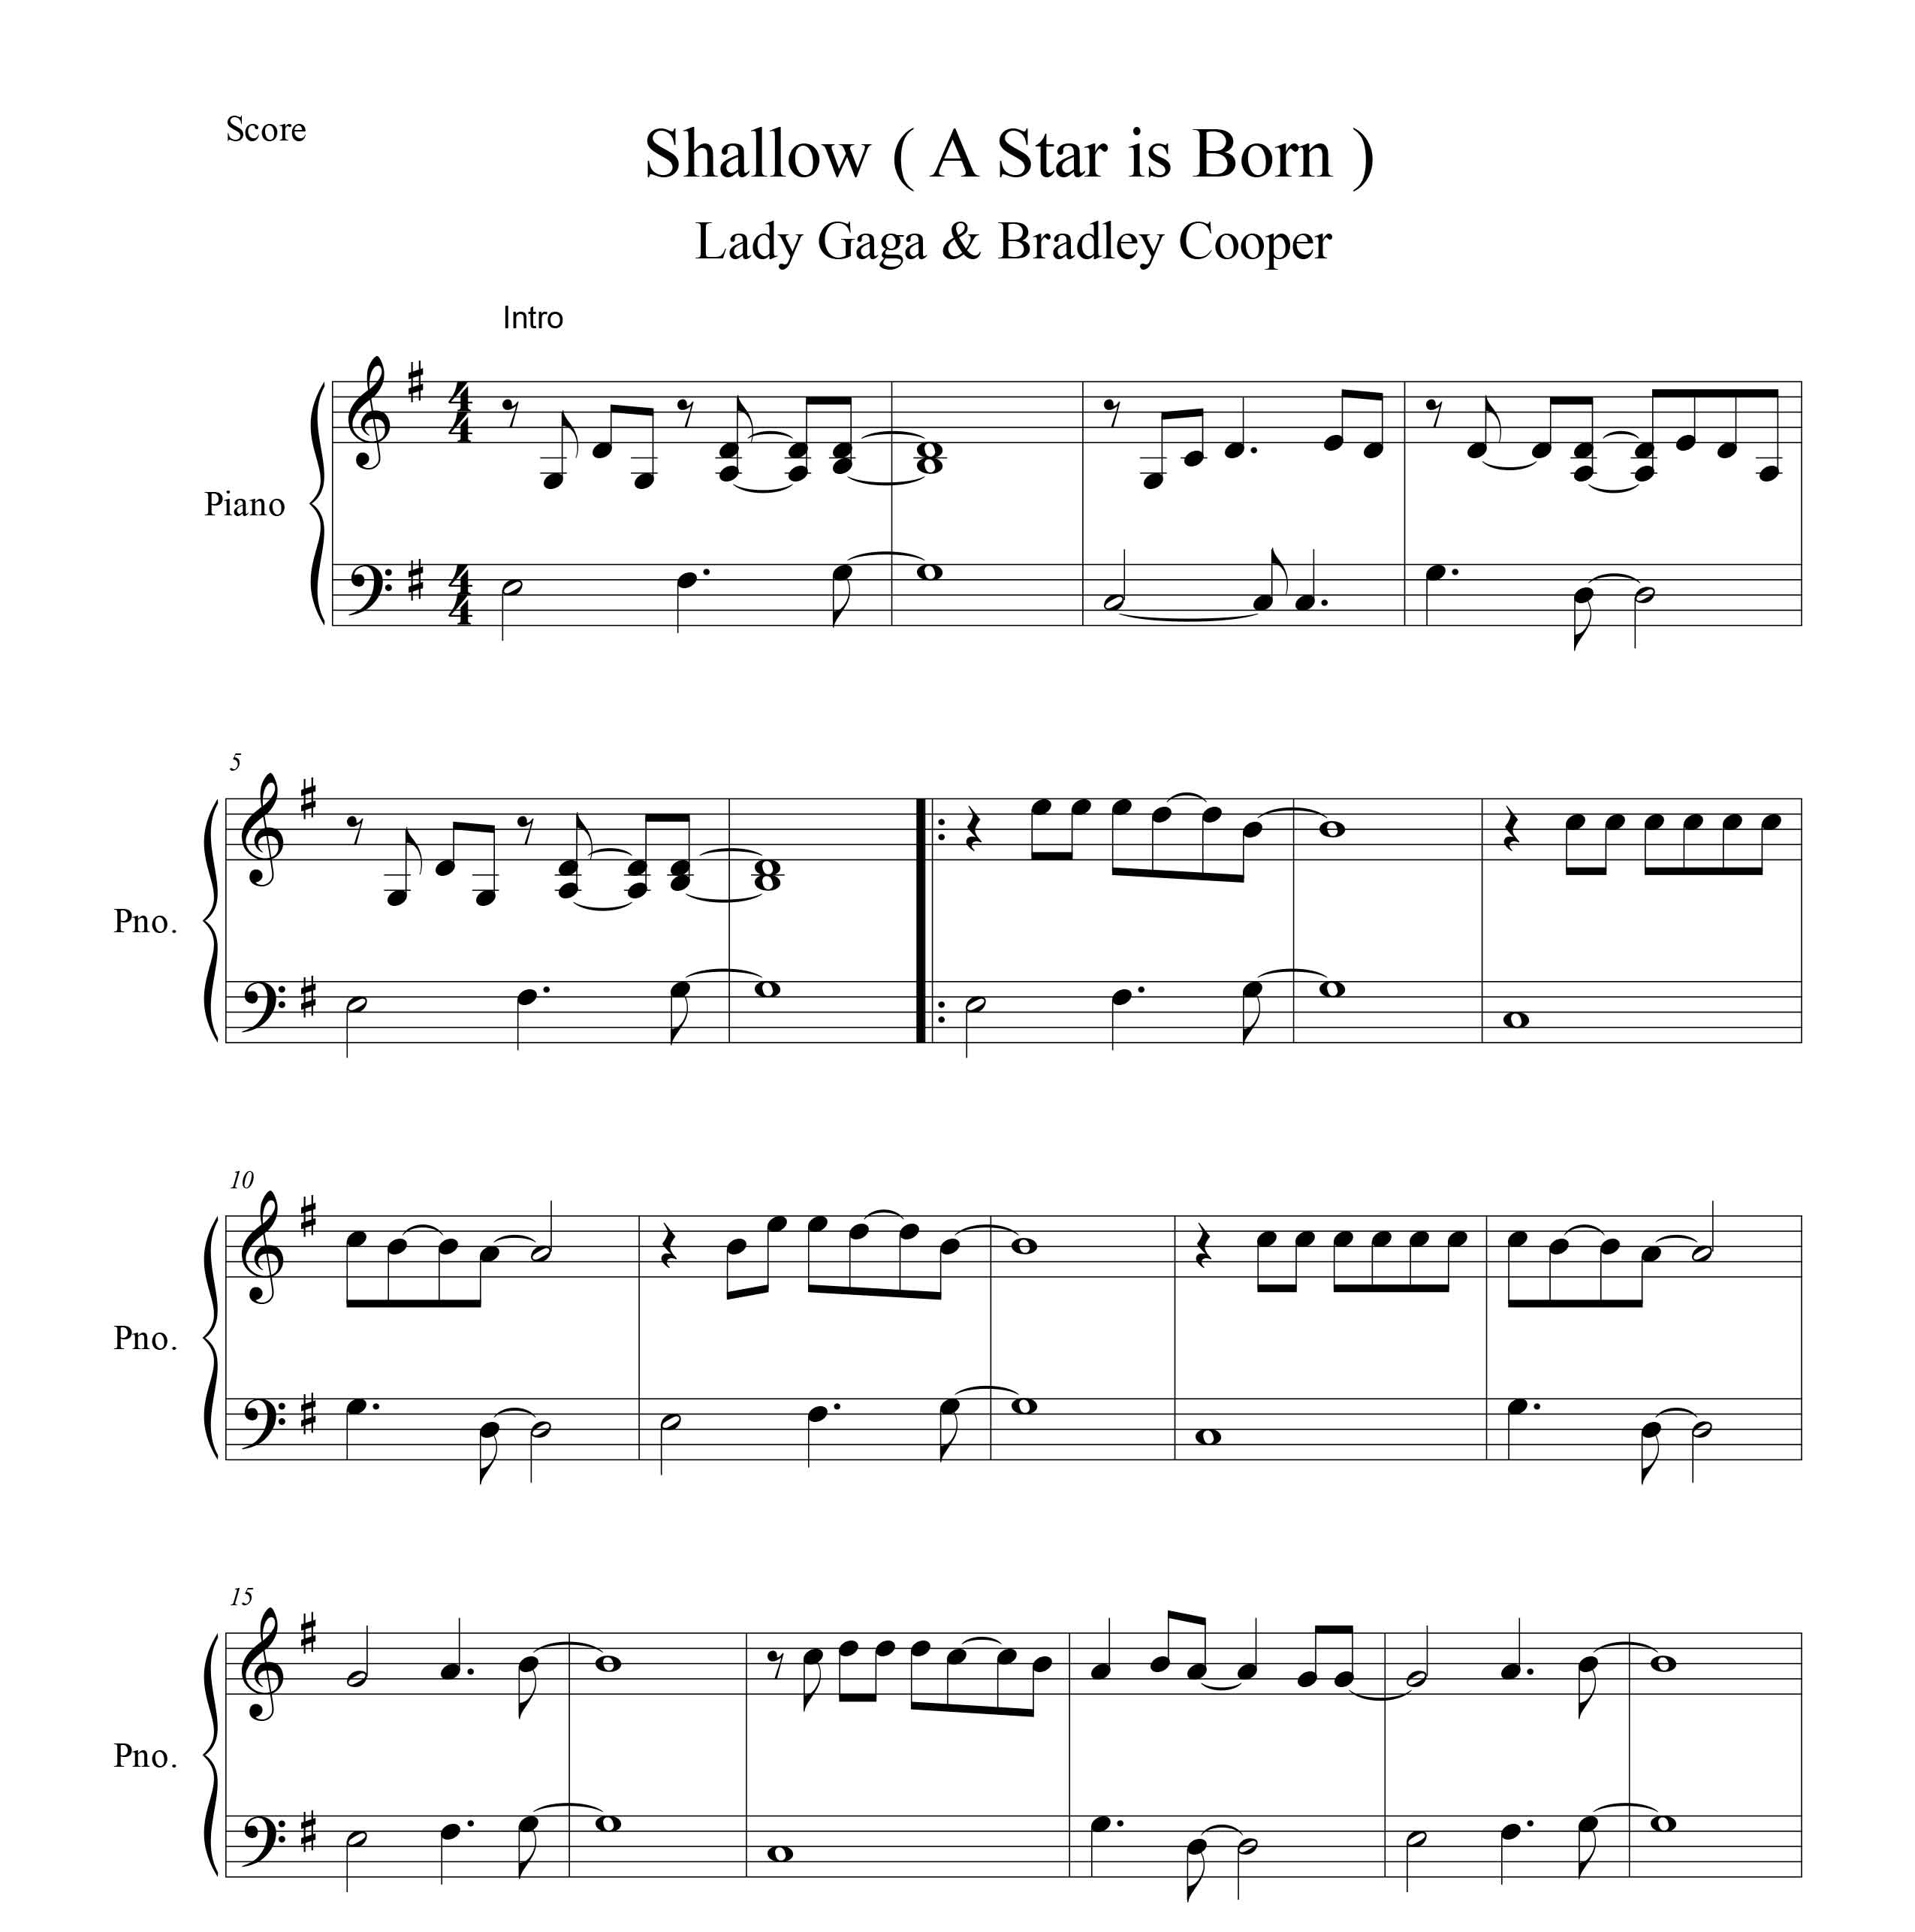 نت پیانو قطعه Shallow از Lady Gaga از فیلم A star is born با تنظیم ساده